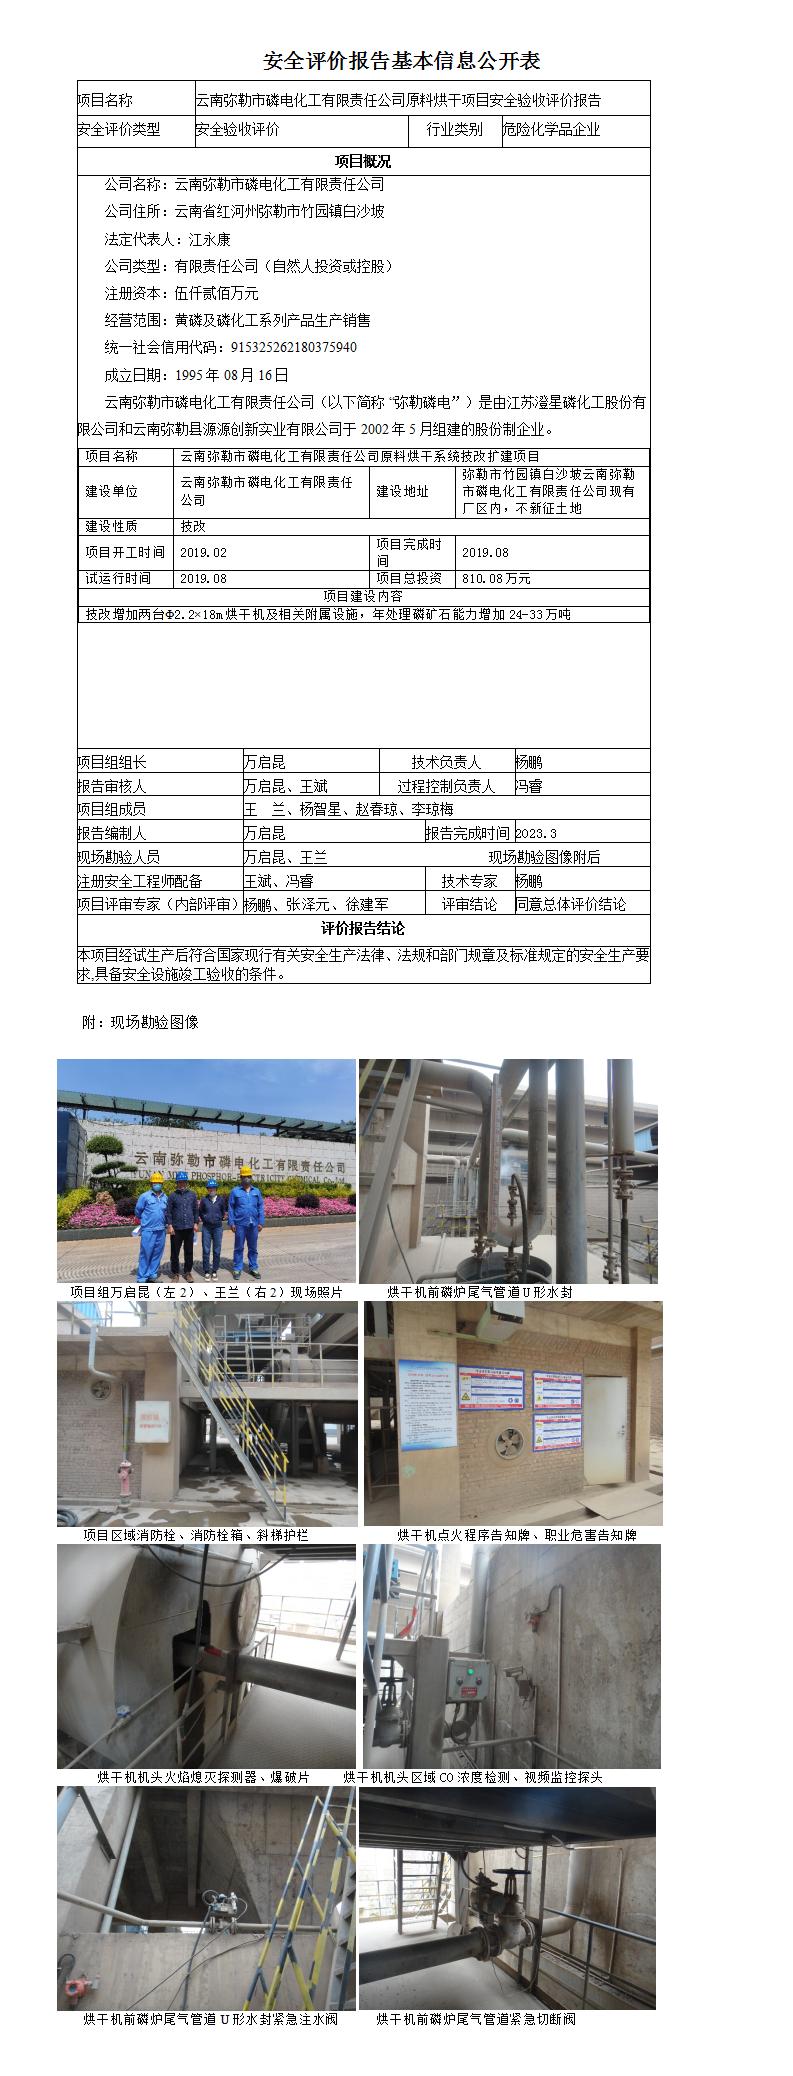 云南弥勒市磷电化工有限责任公司原料烘干项目安全验收评价报告基本信息公开表